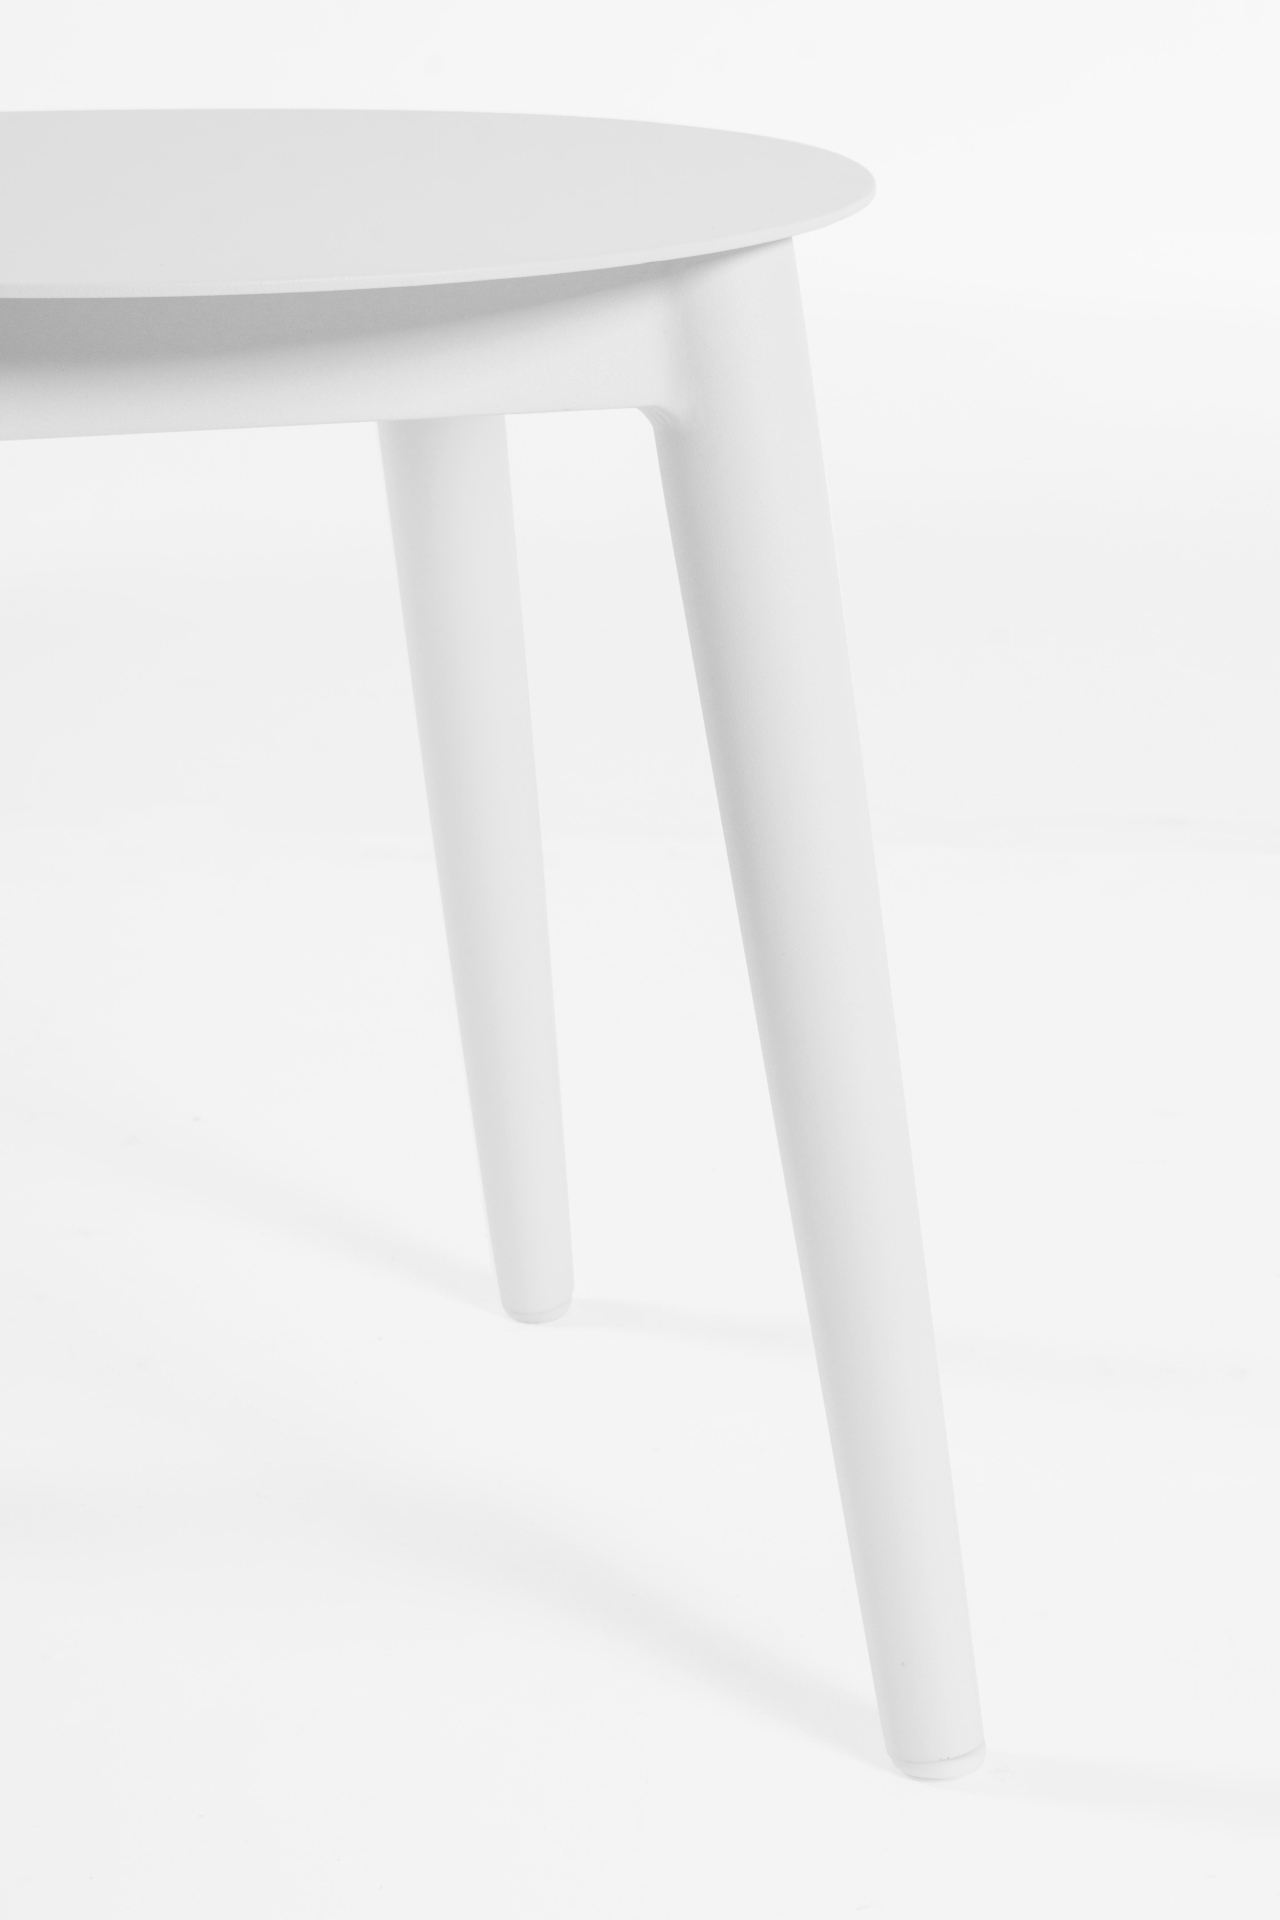 Das Balkon Set Isabela überzeugt mit seinem modernen Design. Gefertigt wurde es aus Olefin-Stoff, welcher einen grauen Farbton besitzt. Das Gestell ist aus Aluminium und hat eine weiße Farbe. Das Set verfügt über eine Sitzhöhe von 42 cm und ist für den Ou